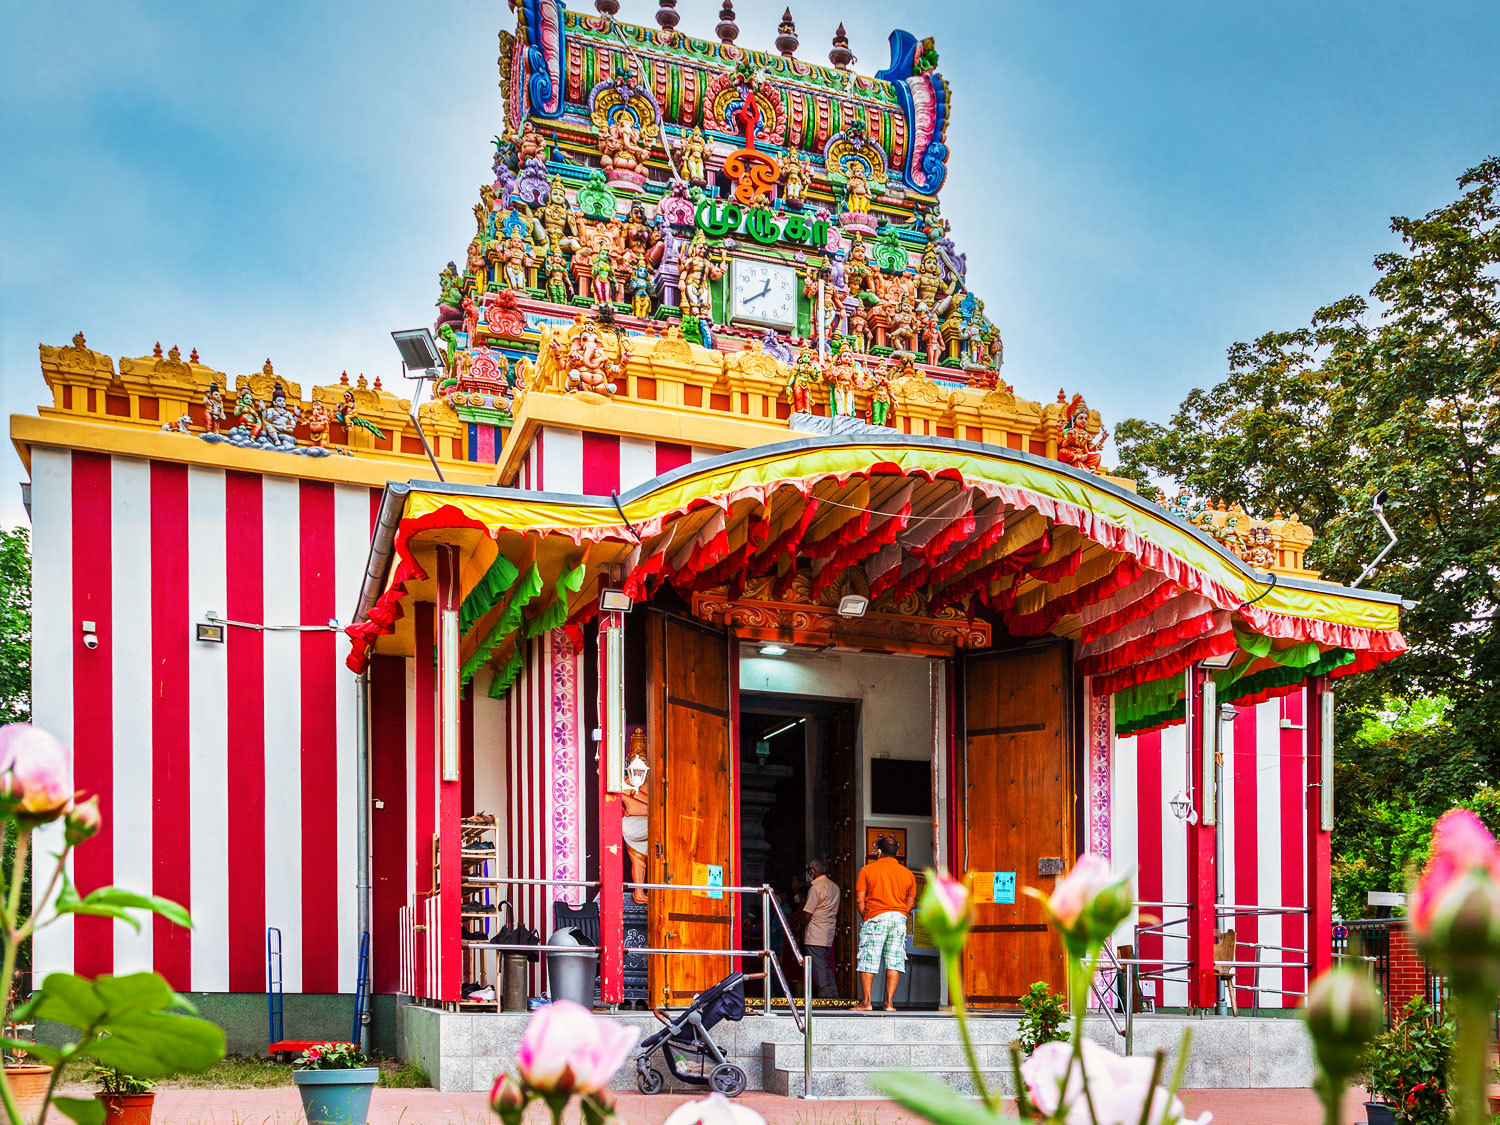 Ein Hindutempel. Der unterer Teil des Tempels ist rot-weiß gestreift gestrichen. Darüber eine Art Turm mit vielen hinduistischen Göttern. Die Götter sind sehr farbenfroh angemalt. 